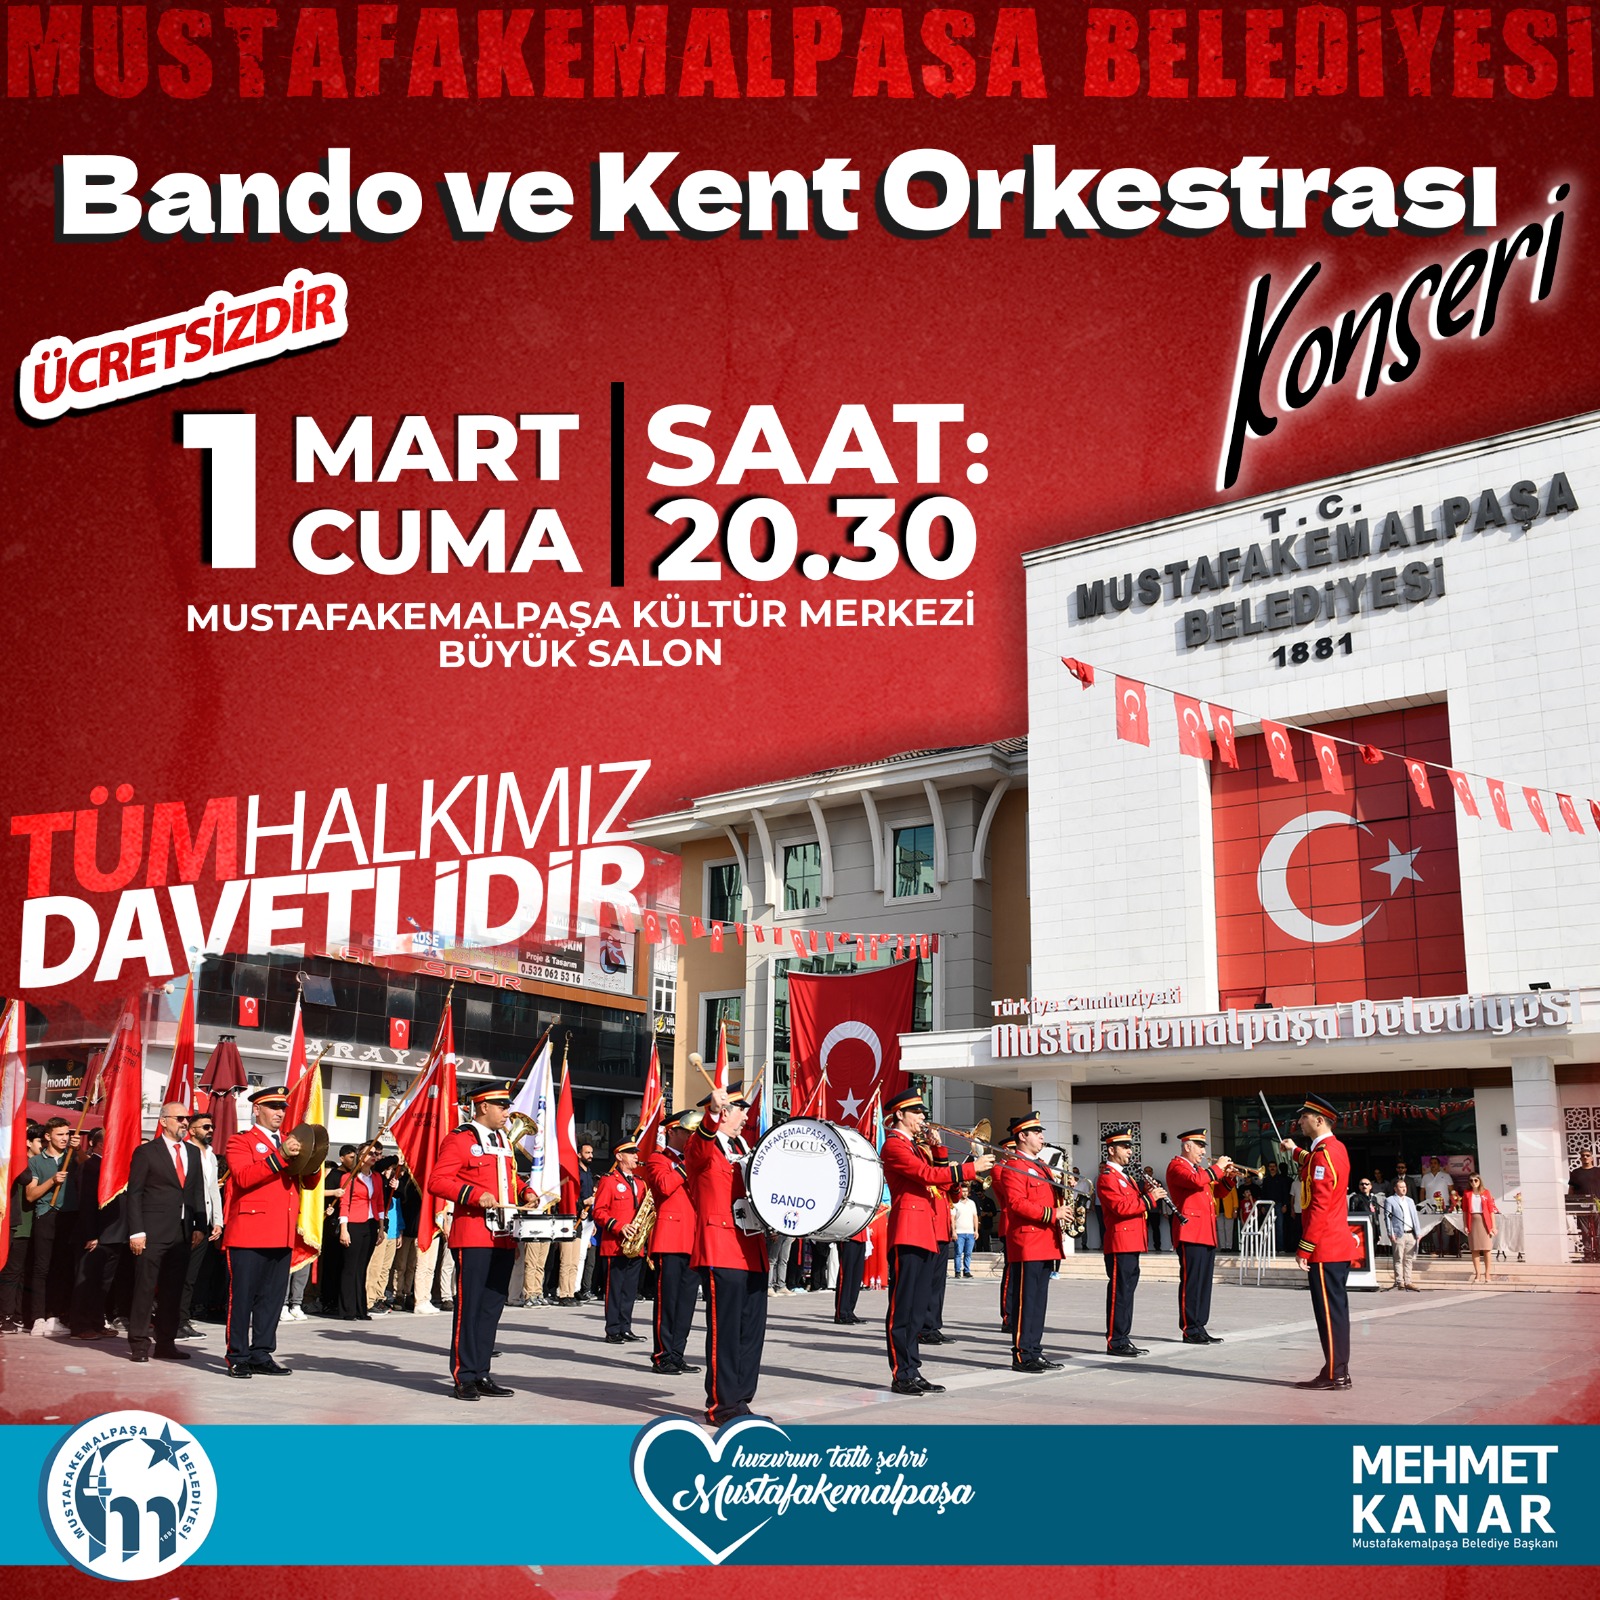 Mustafakemalpaşa Belediyesi Bando ve Kent Orkestrası Konseri